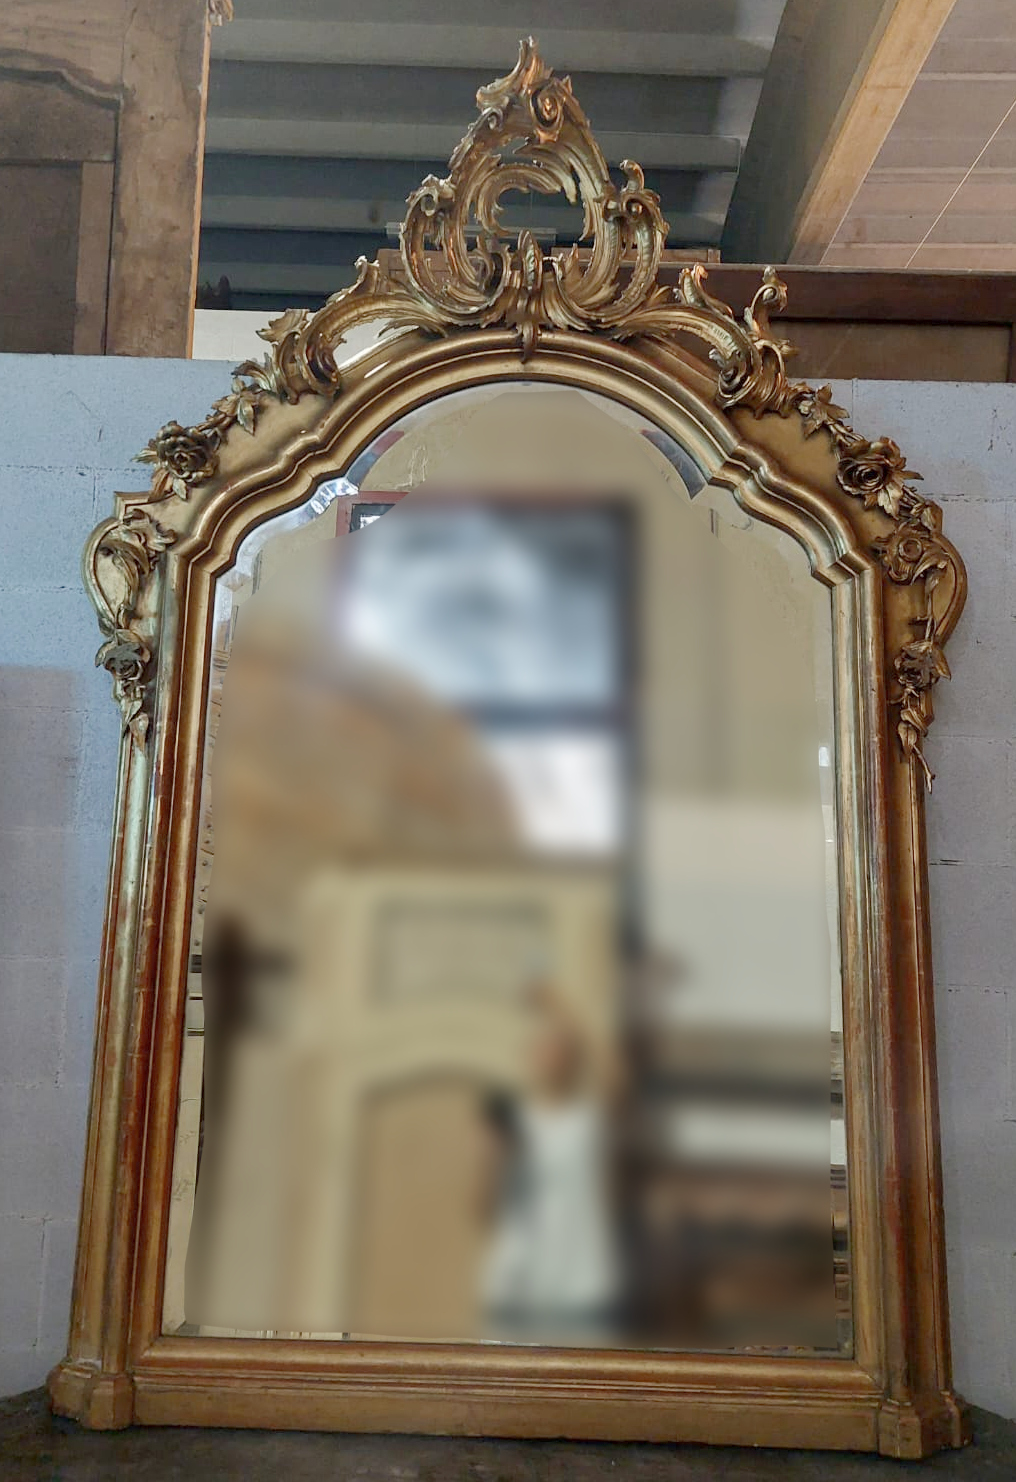 specc407 - specchiera in legno dorato, misura cm L 135 x H 205